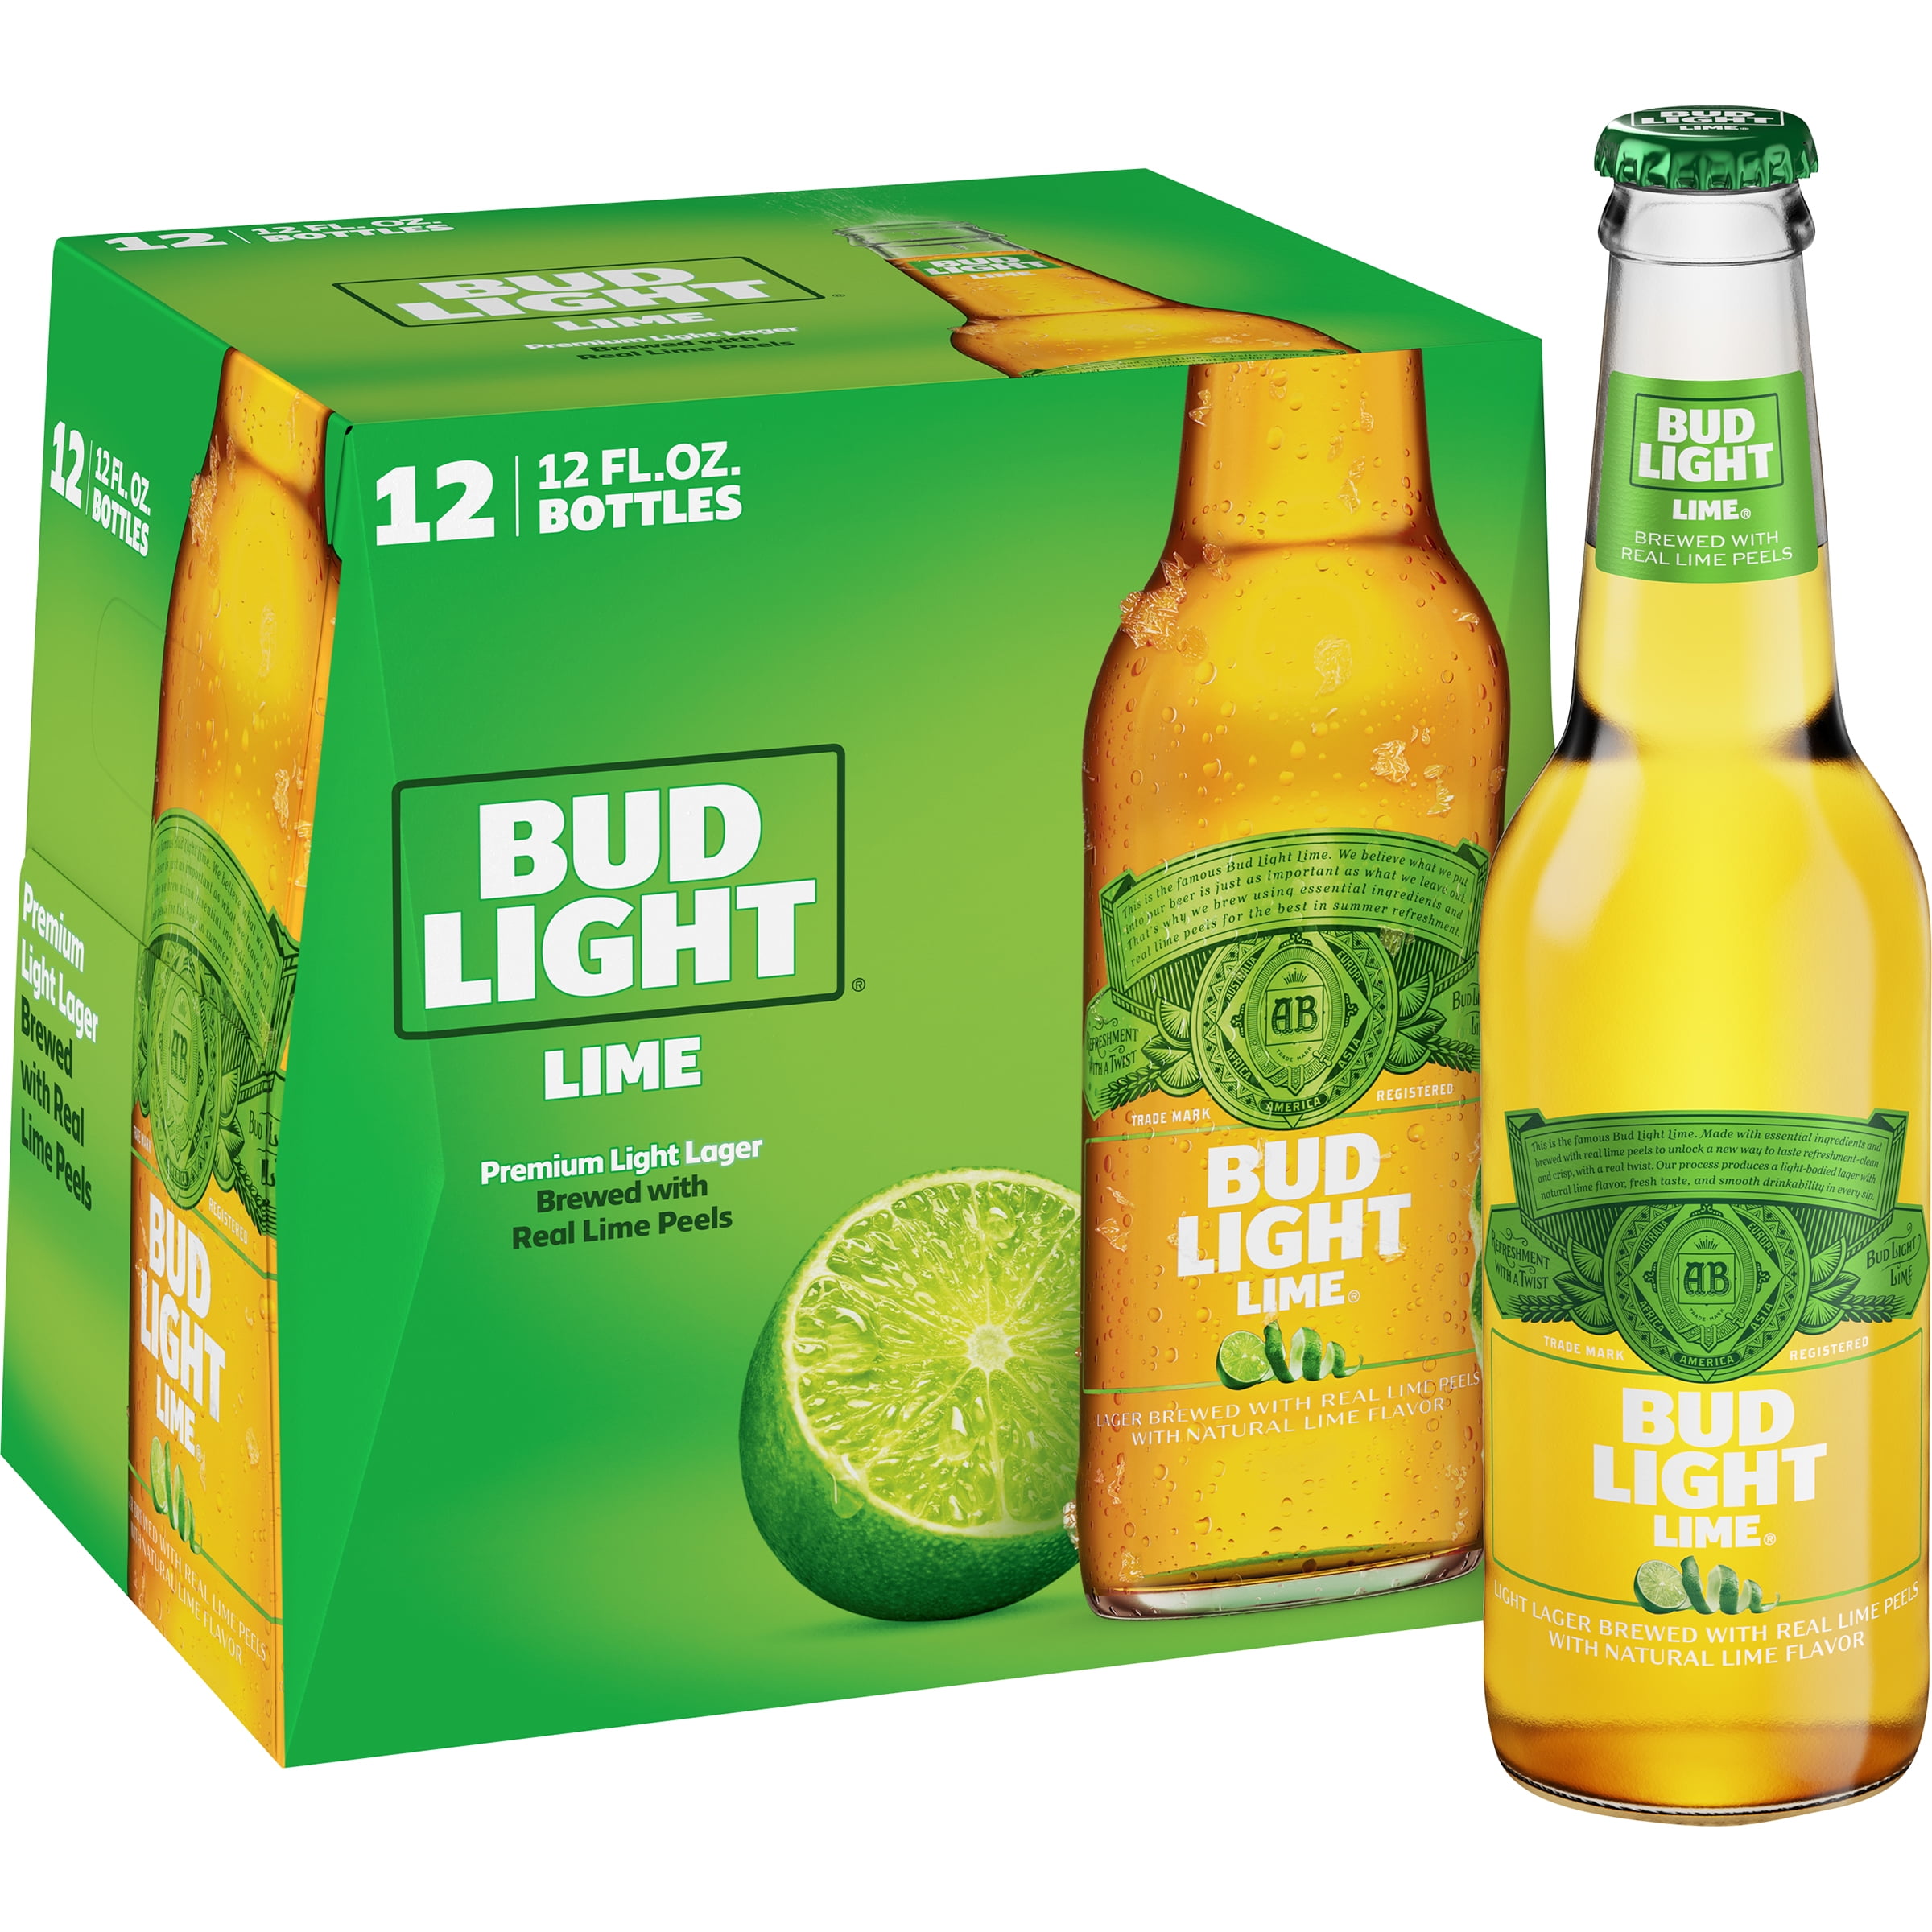 Bud Light Lime Beer 12 Pack Beer 12 Fl Oz Bottles 4 2 Abv